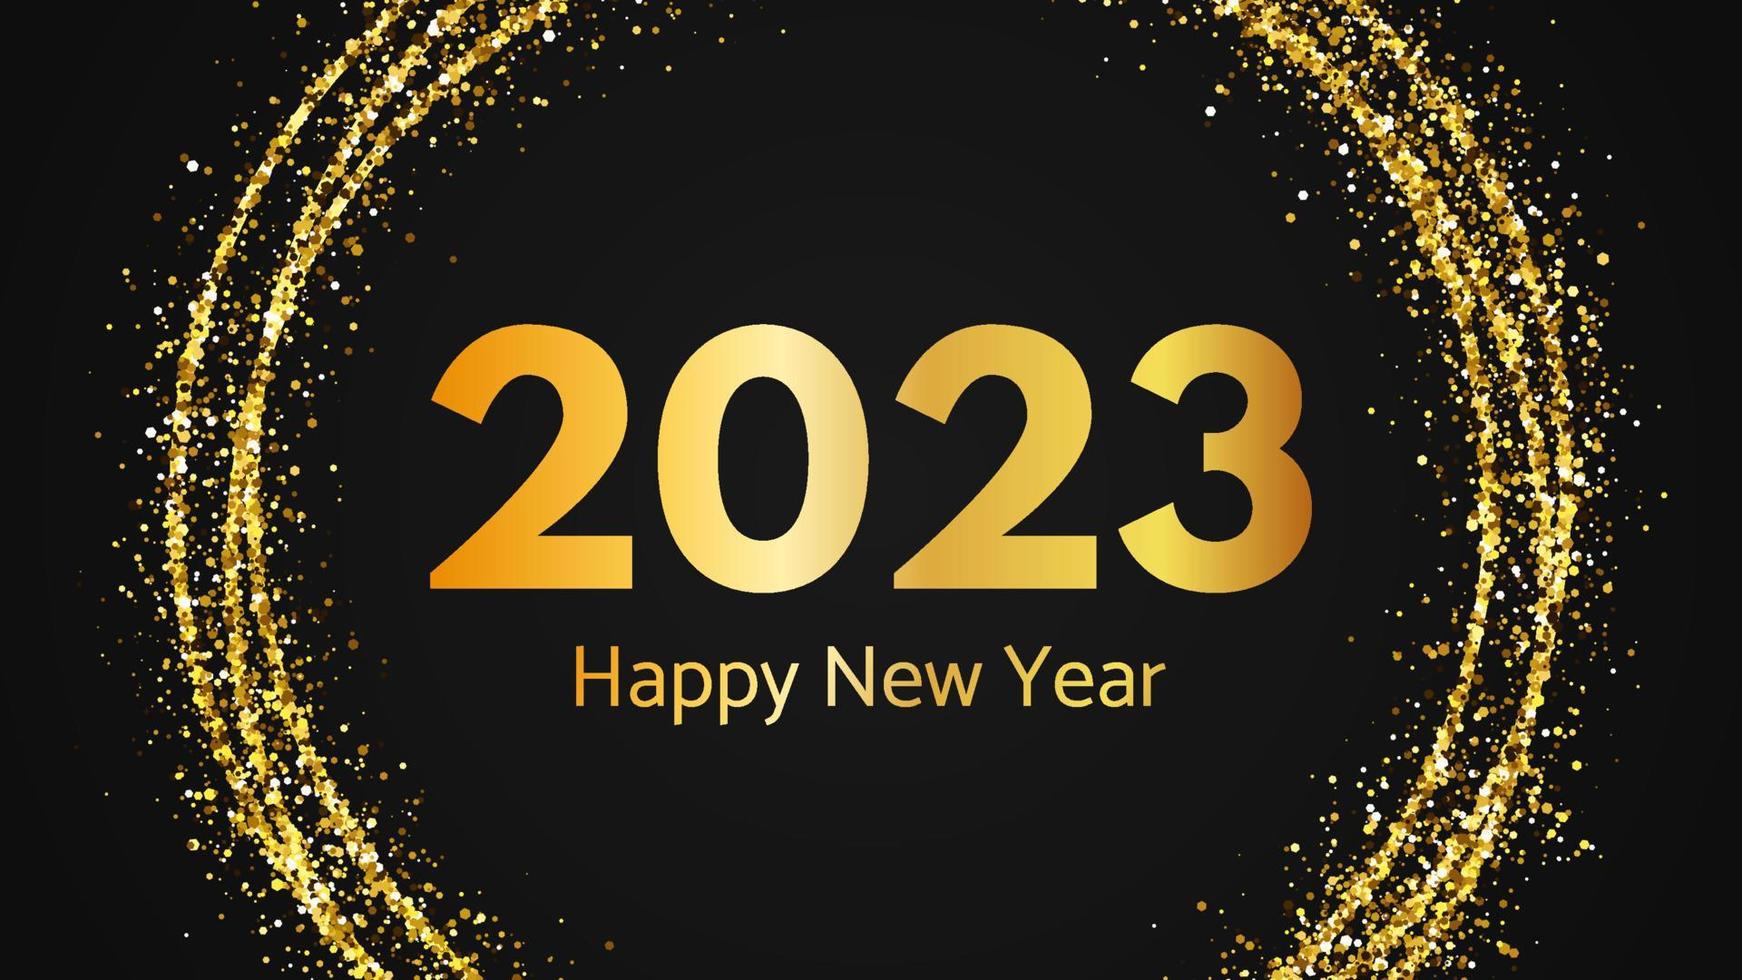 2023 frohes neues Jahr Goldhintergrund vektor